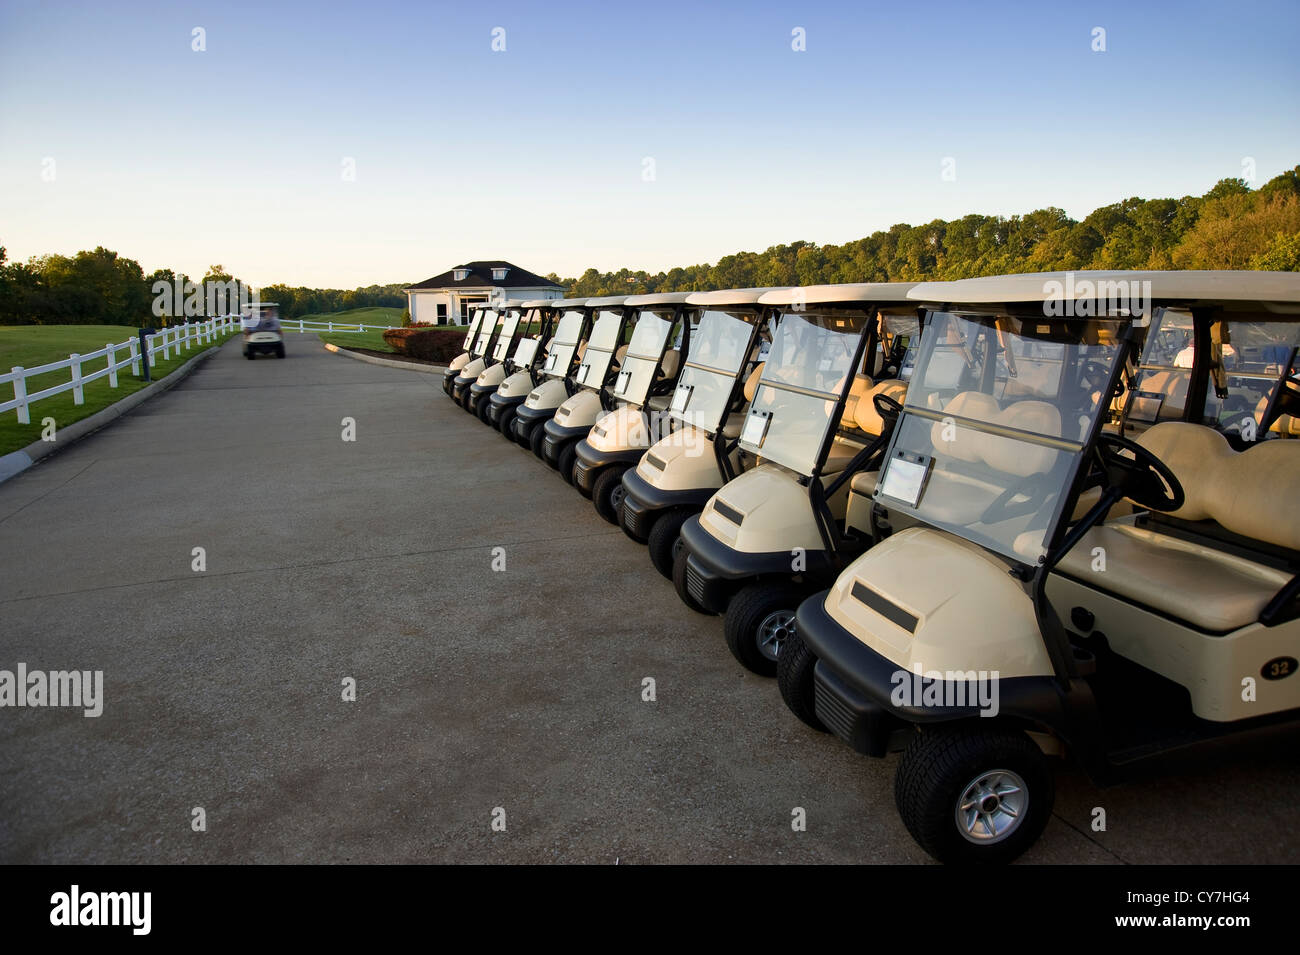 La fila de carros de golf en campos de golf, Florida, EE.UU. Foto de stock